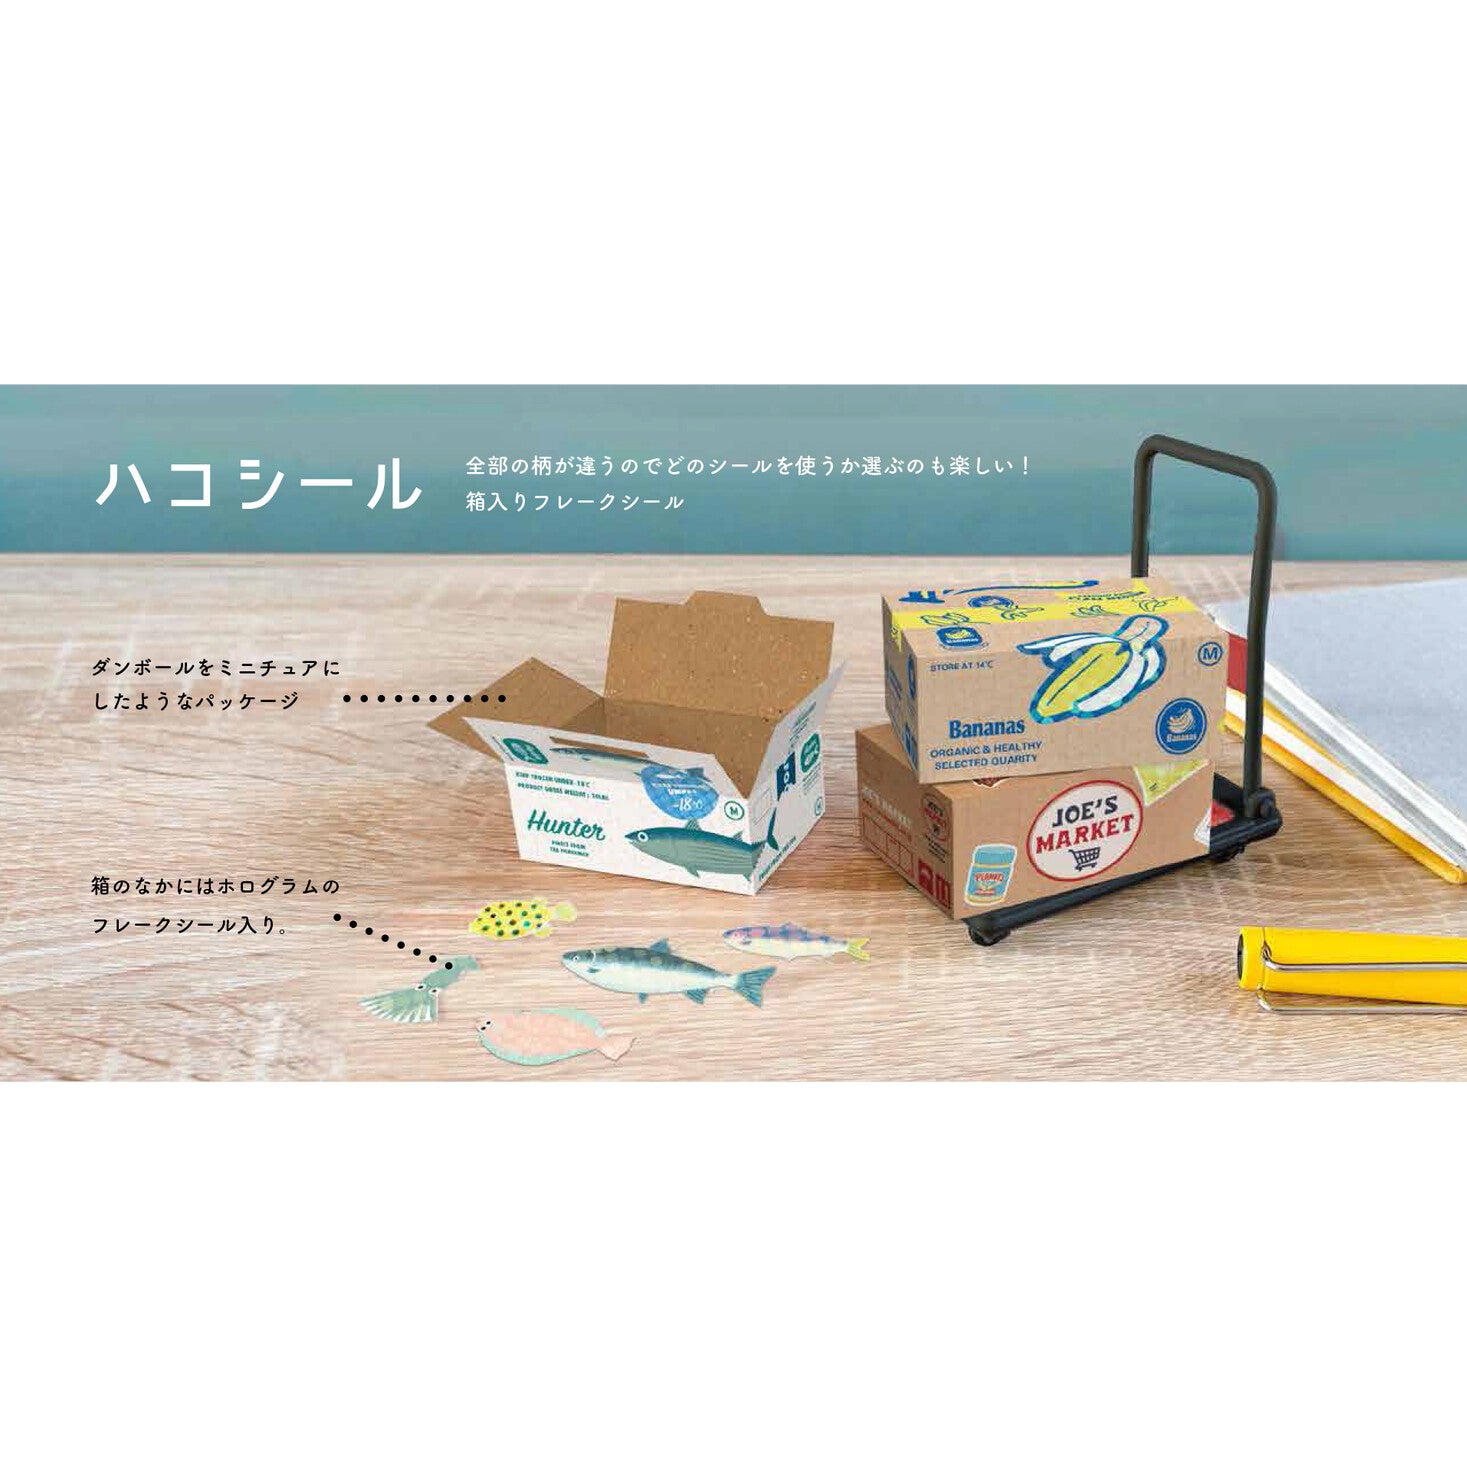 Miniature Shipping Box Flake Sticker Set - Bakery